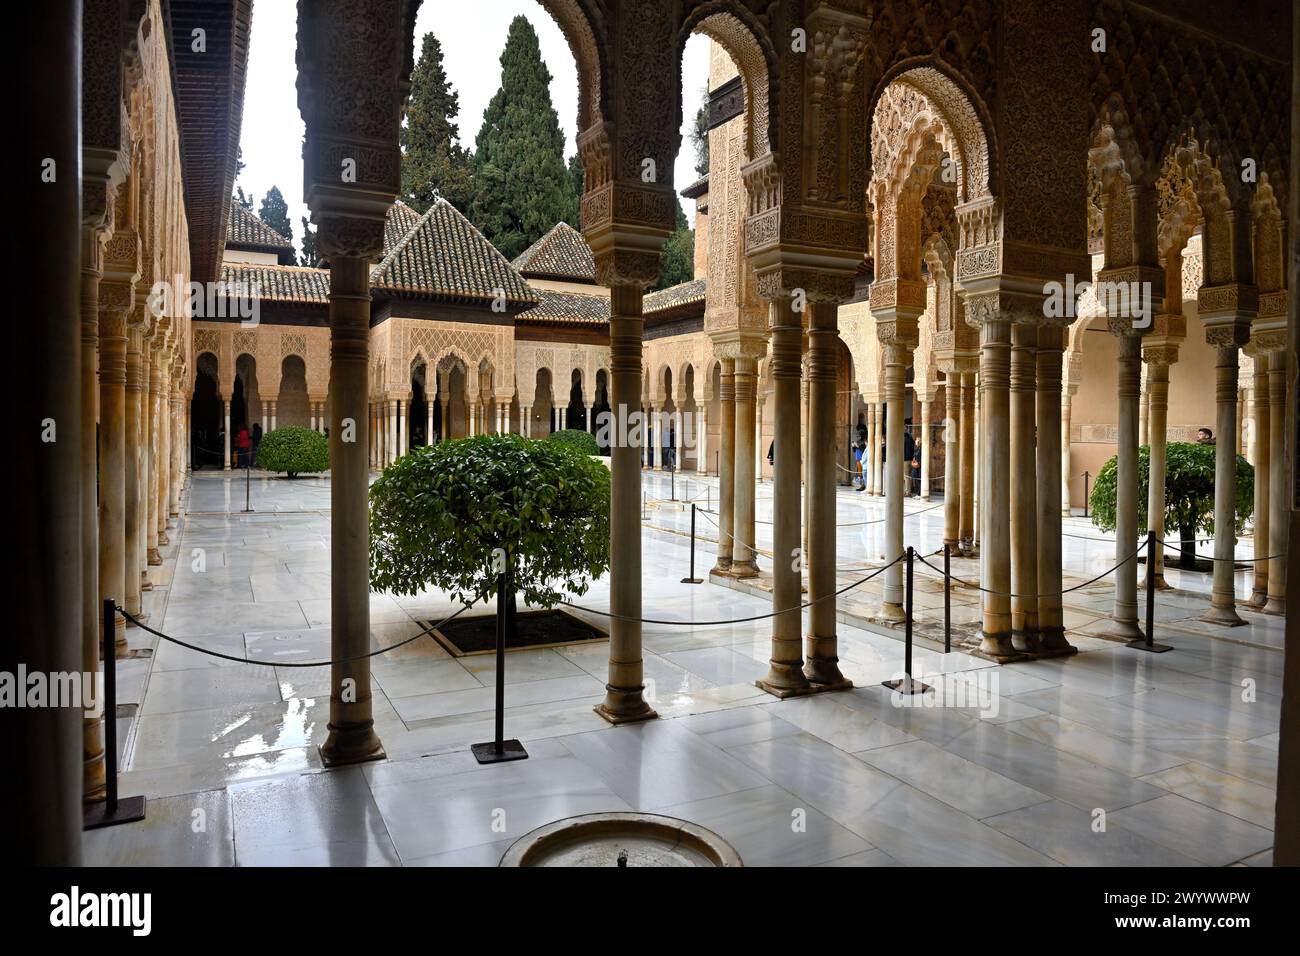 Cour des Lions avec colonnes voûtées, Palais Nasrides, Palais de l'Alhambra, Grenade, Espagne Banque D'Images